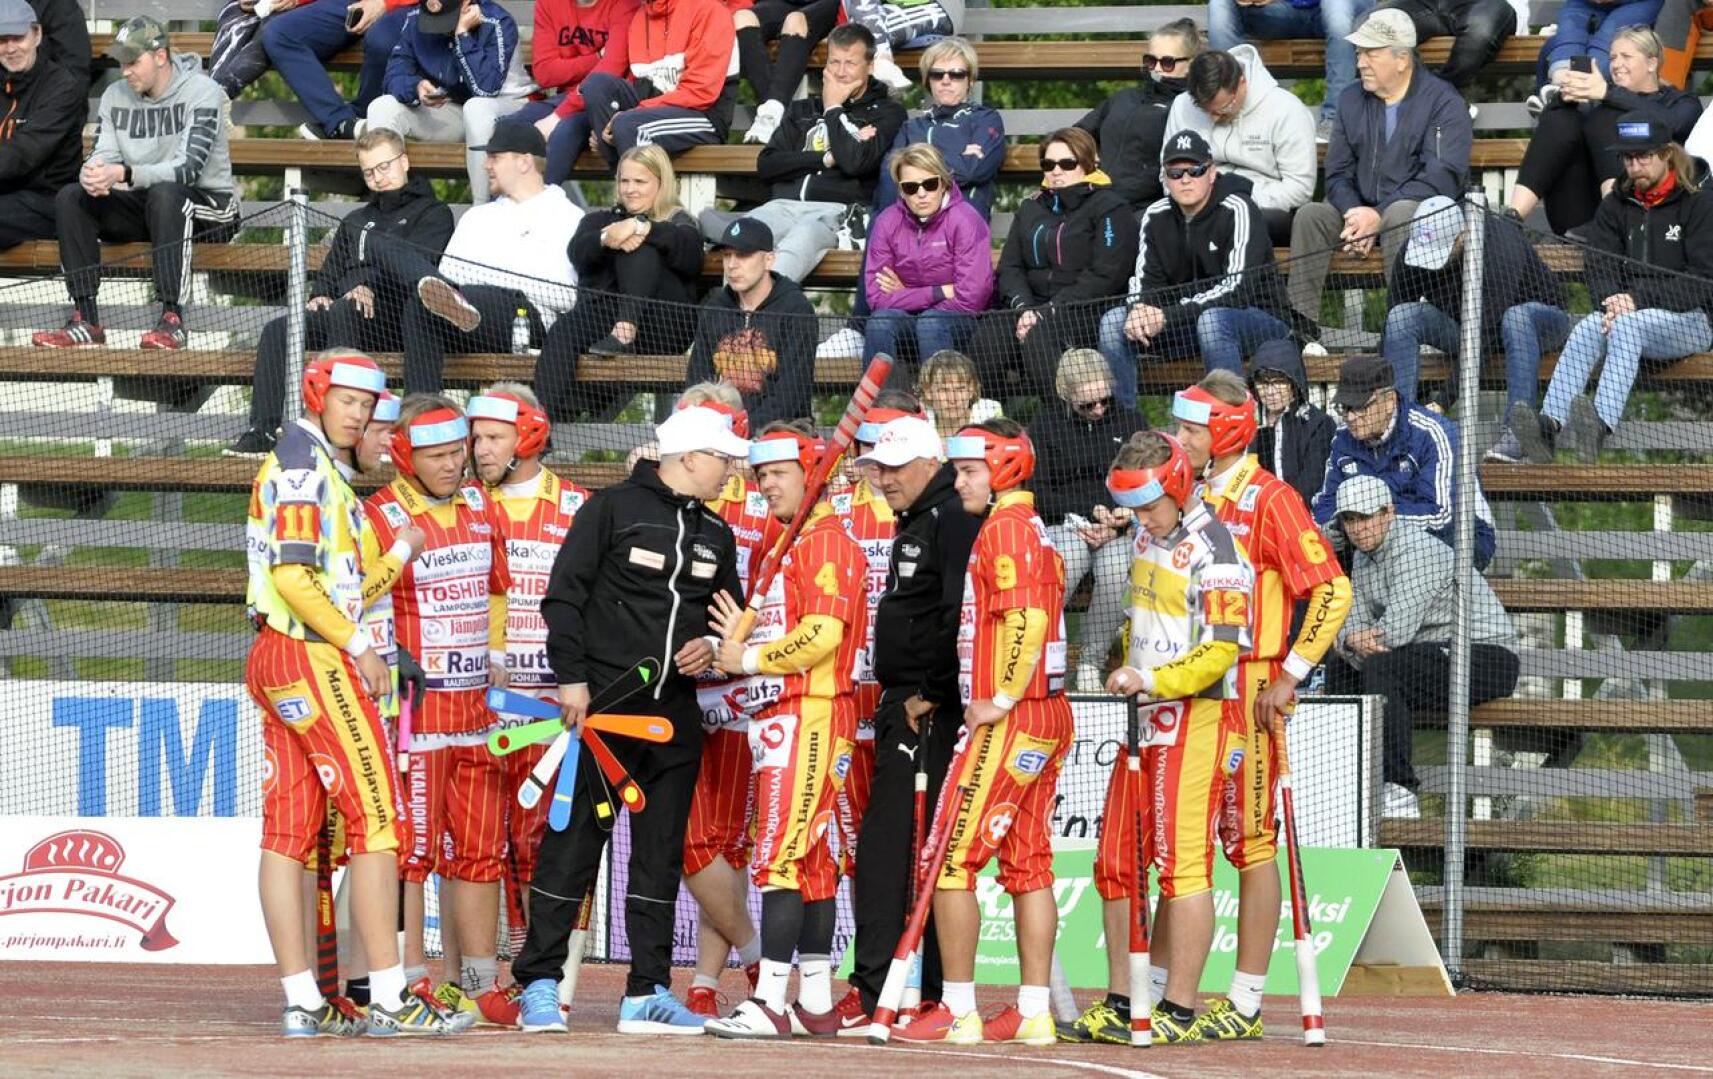 Pitkään miesten ykköspesiksessä pelannut Ylivieskan Kuula putosi viime kauden päätteeksi suomensarjaan, jonne joukkue on lähdössä nuorennetulla ryhmällä.